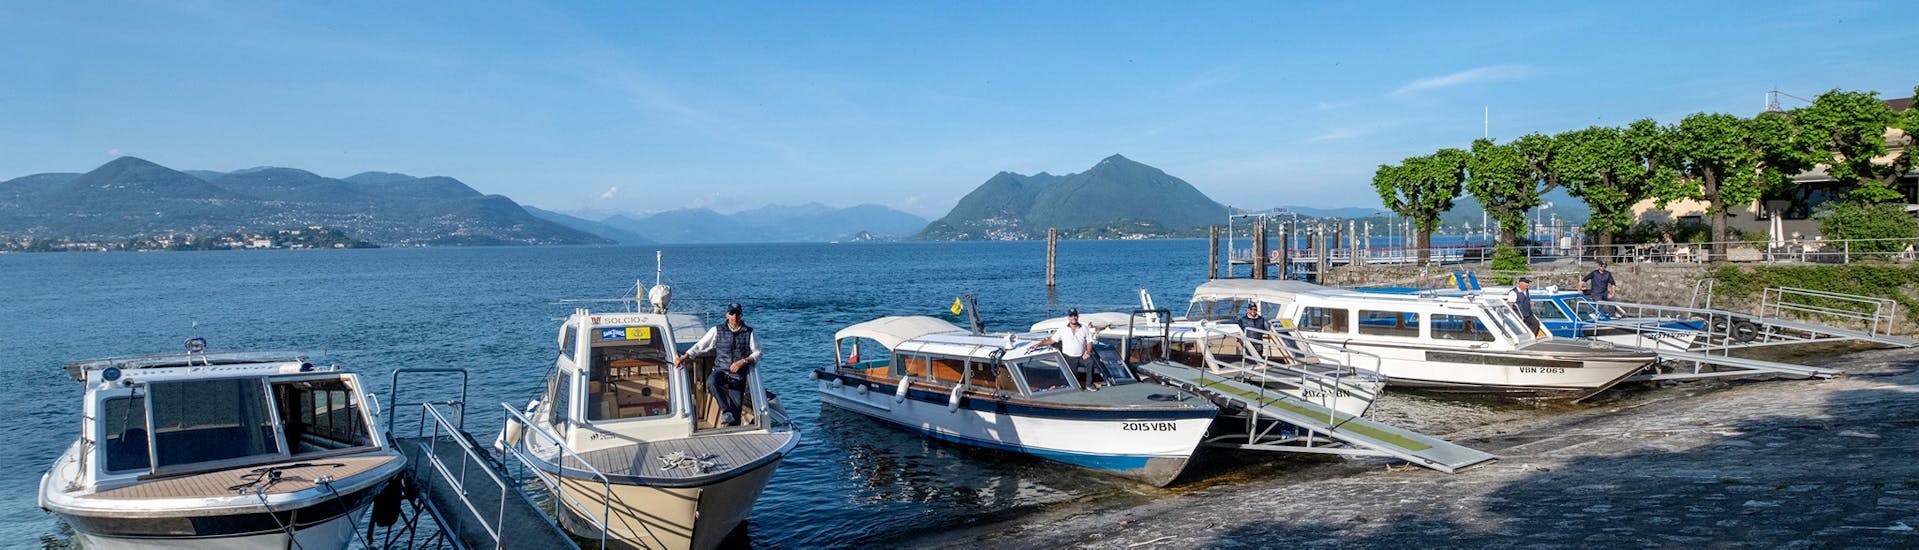 Vue des bateaux utilisés pour le transfert en bateau de Stresa à Isola Pescatori et Isola Bella avec Lake Tours Stresa.